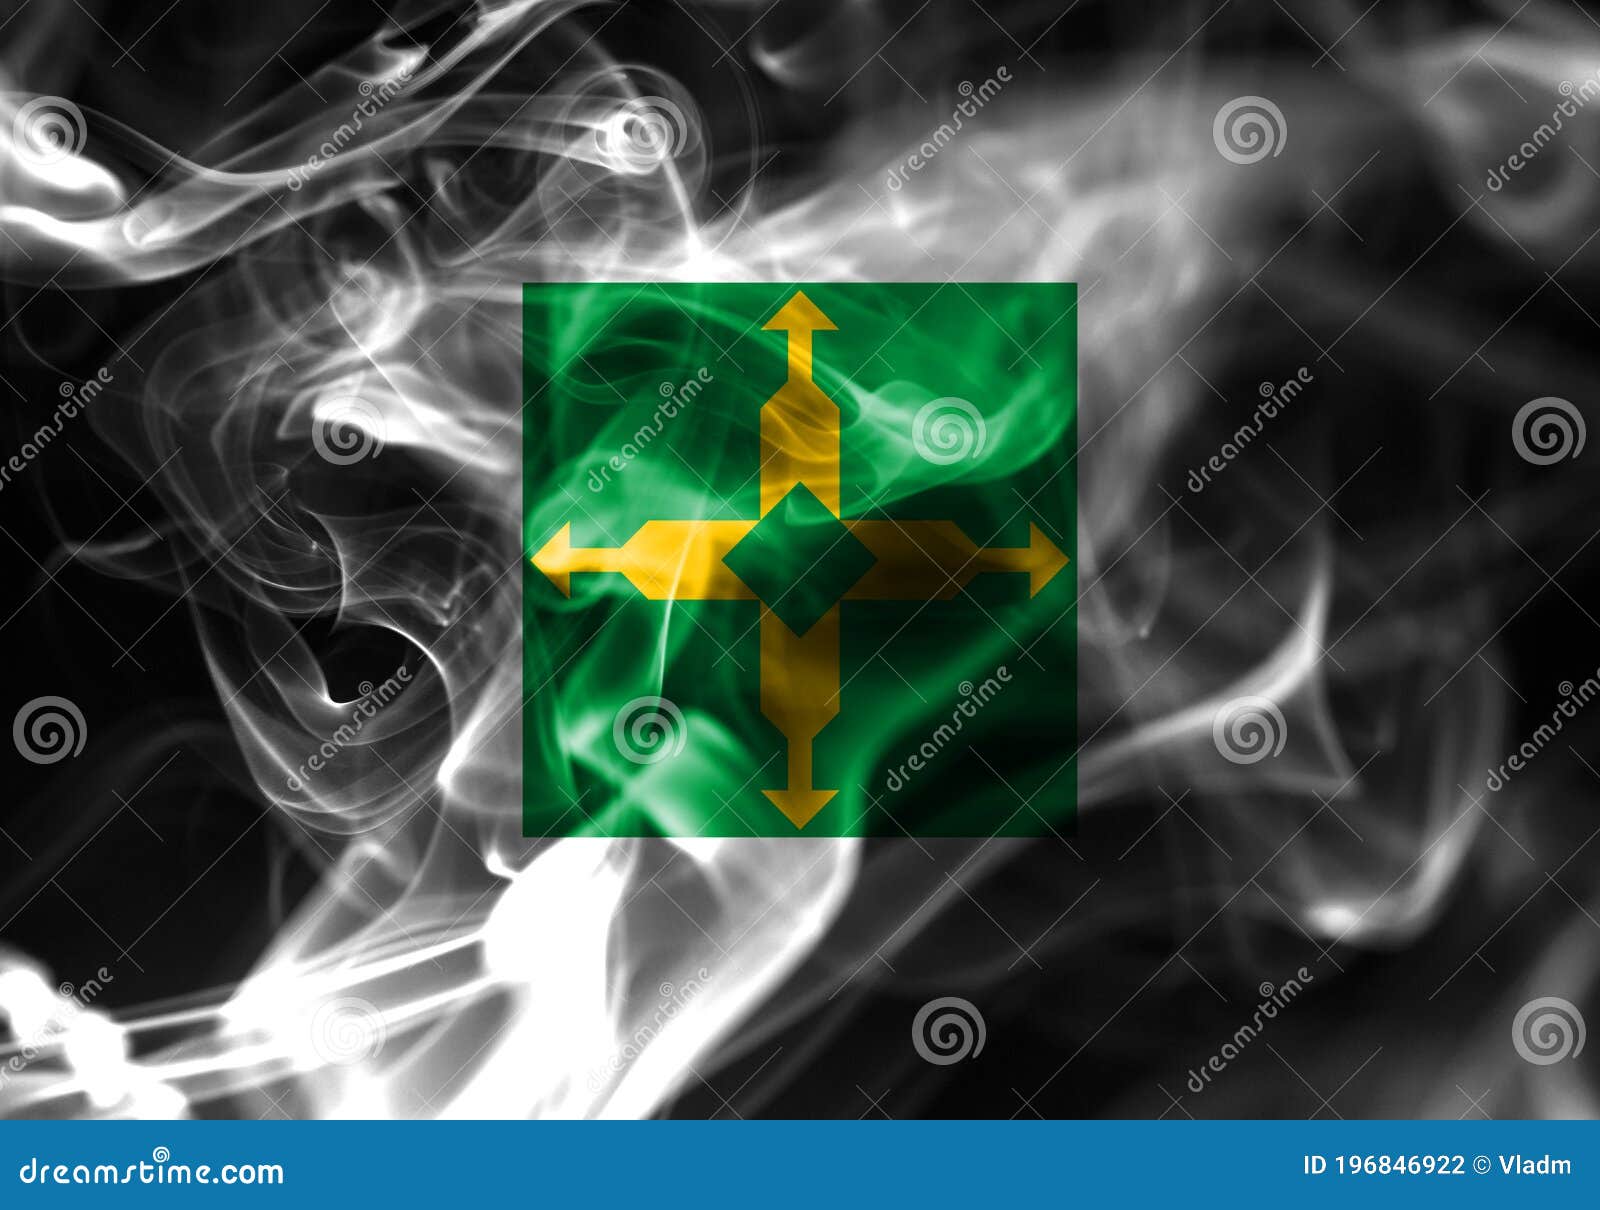 distrito federal smoke flag, ciudad de mexico